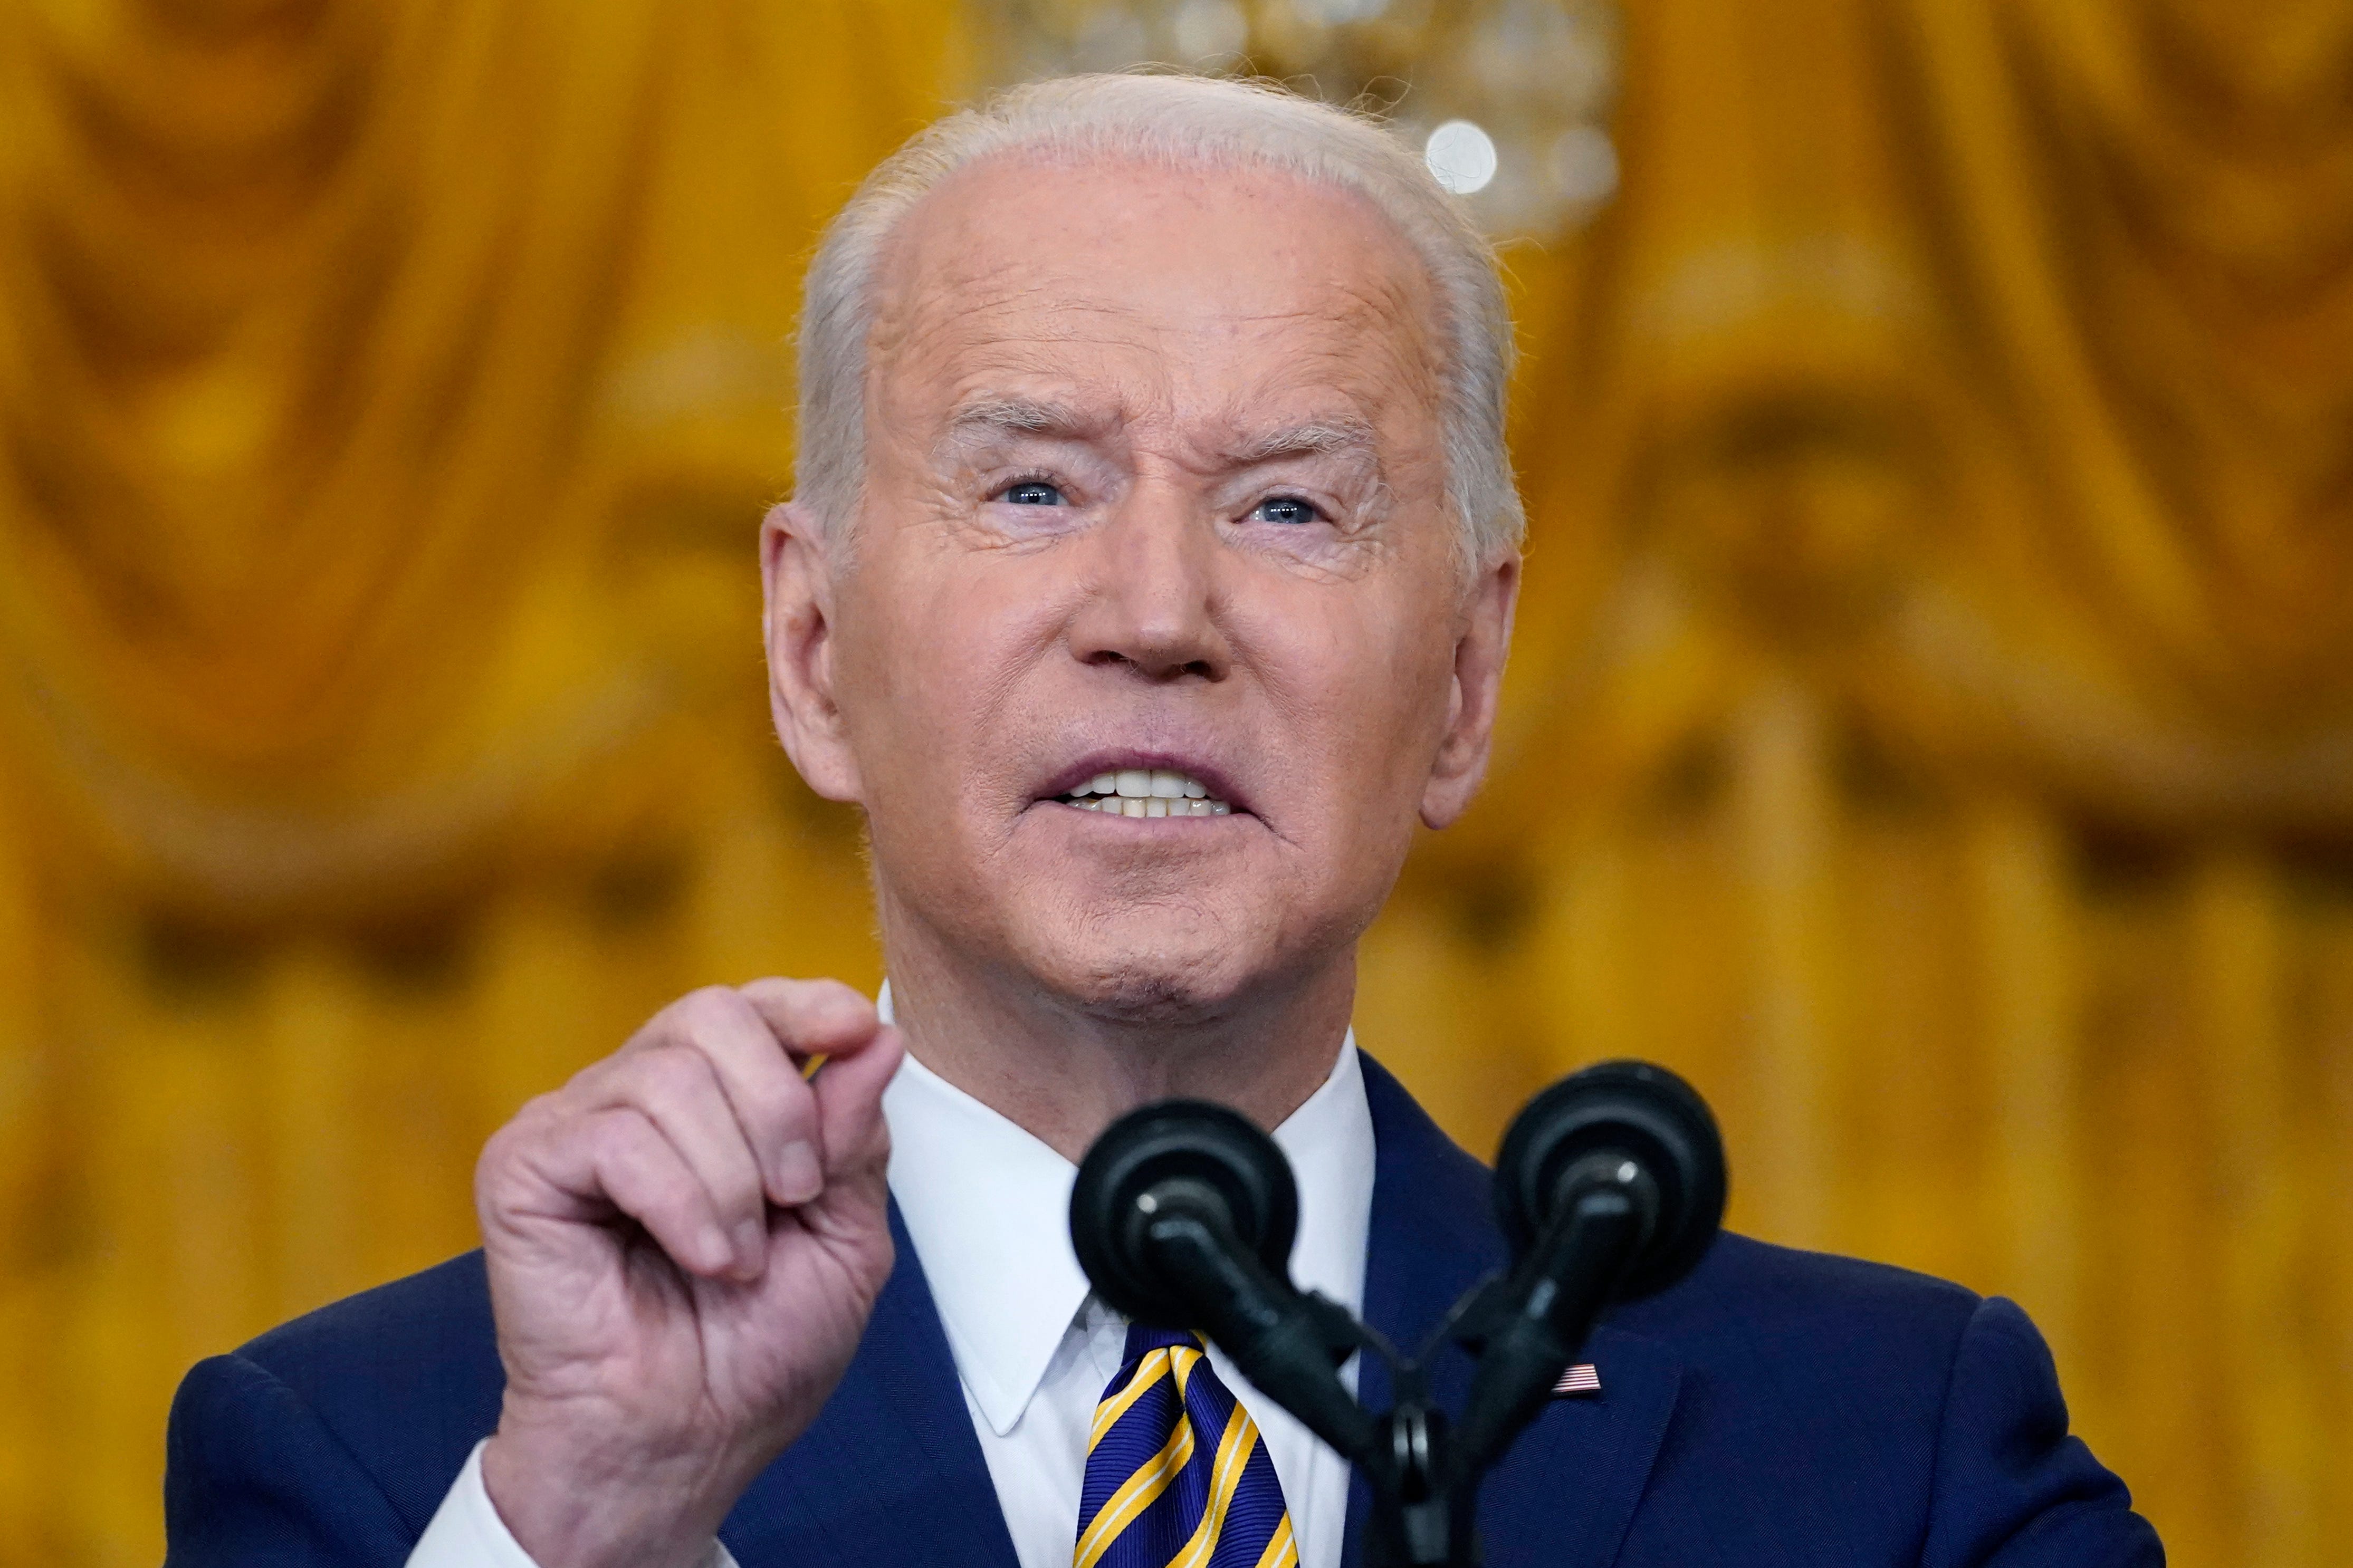 Joe Biden has made great progress in rebuilding America: Jen Psaki